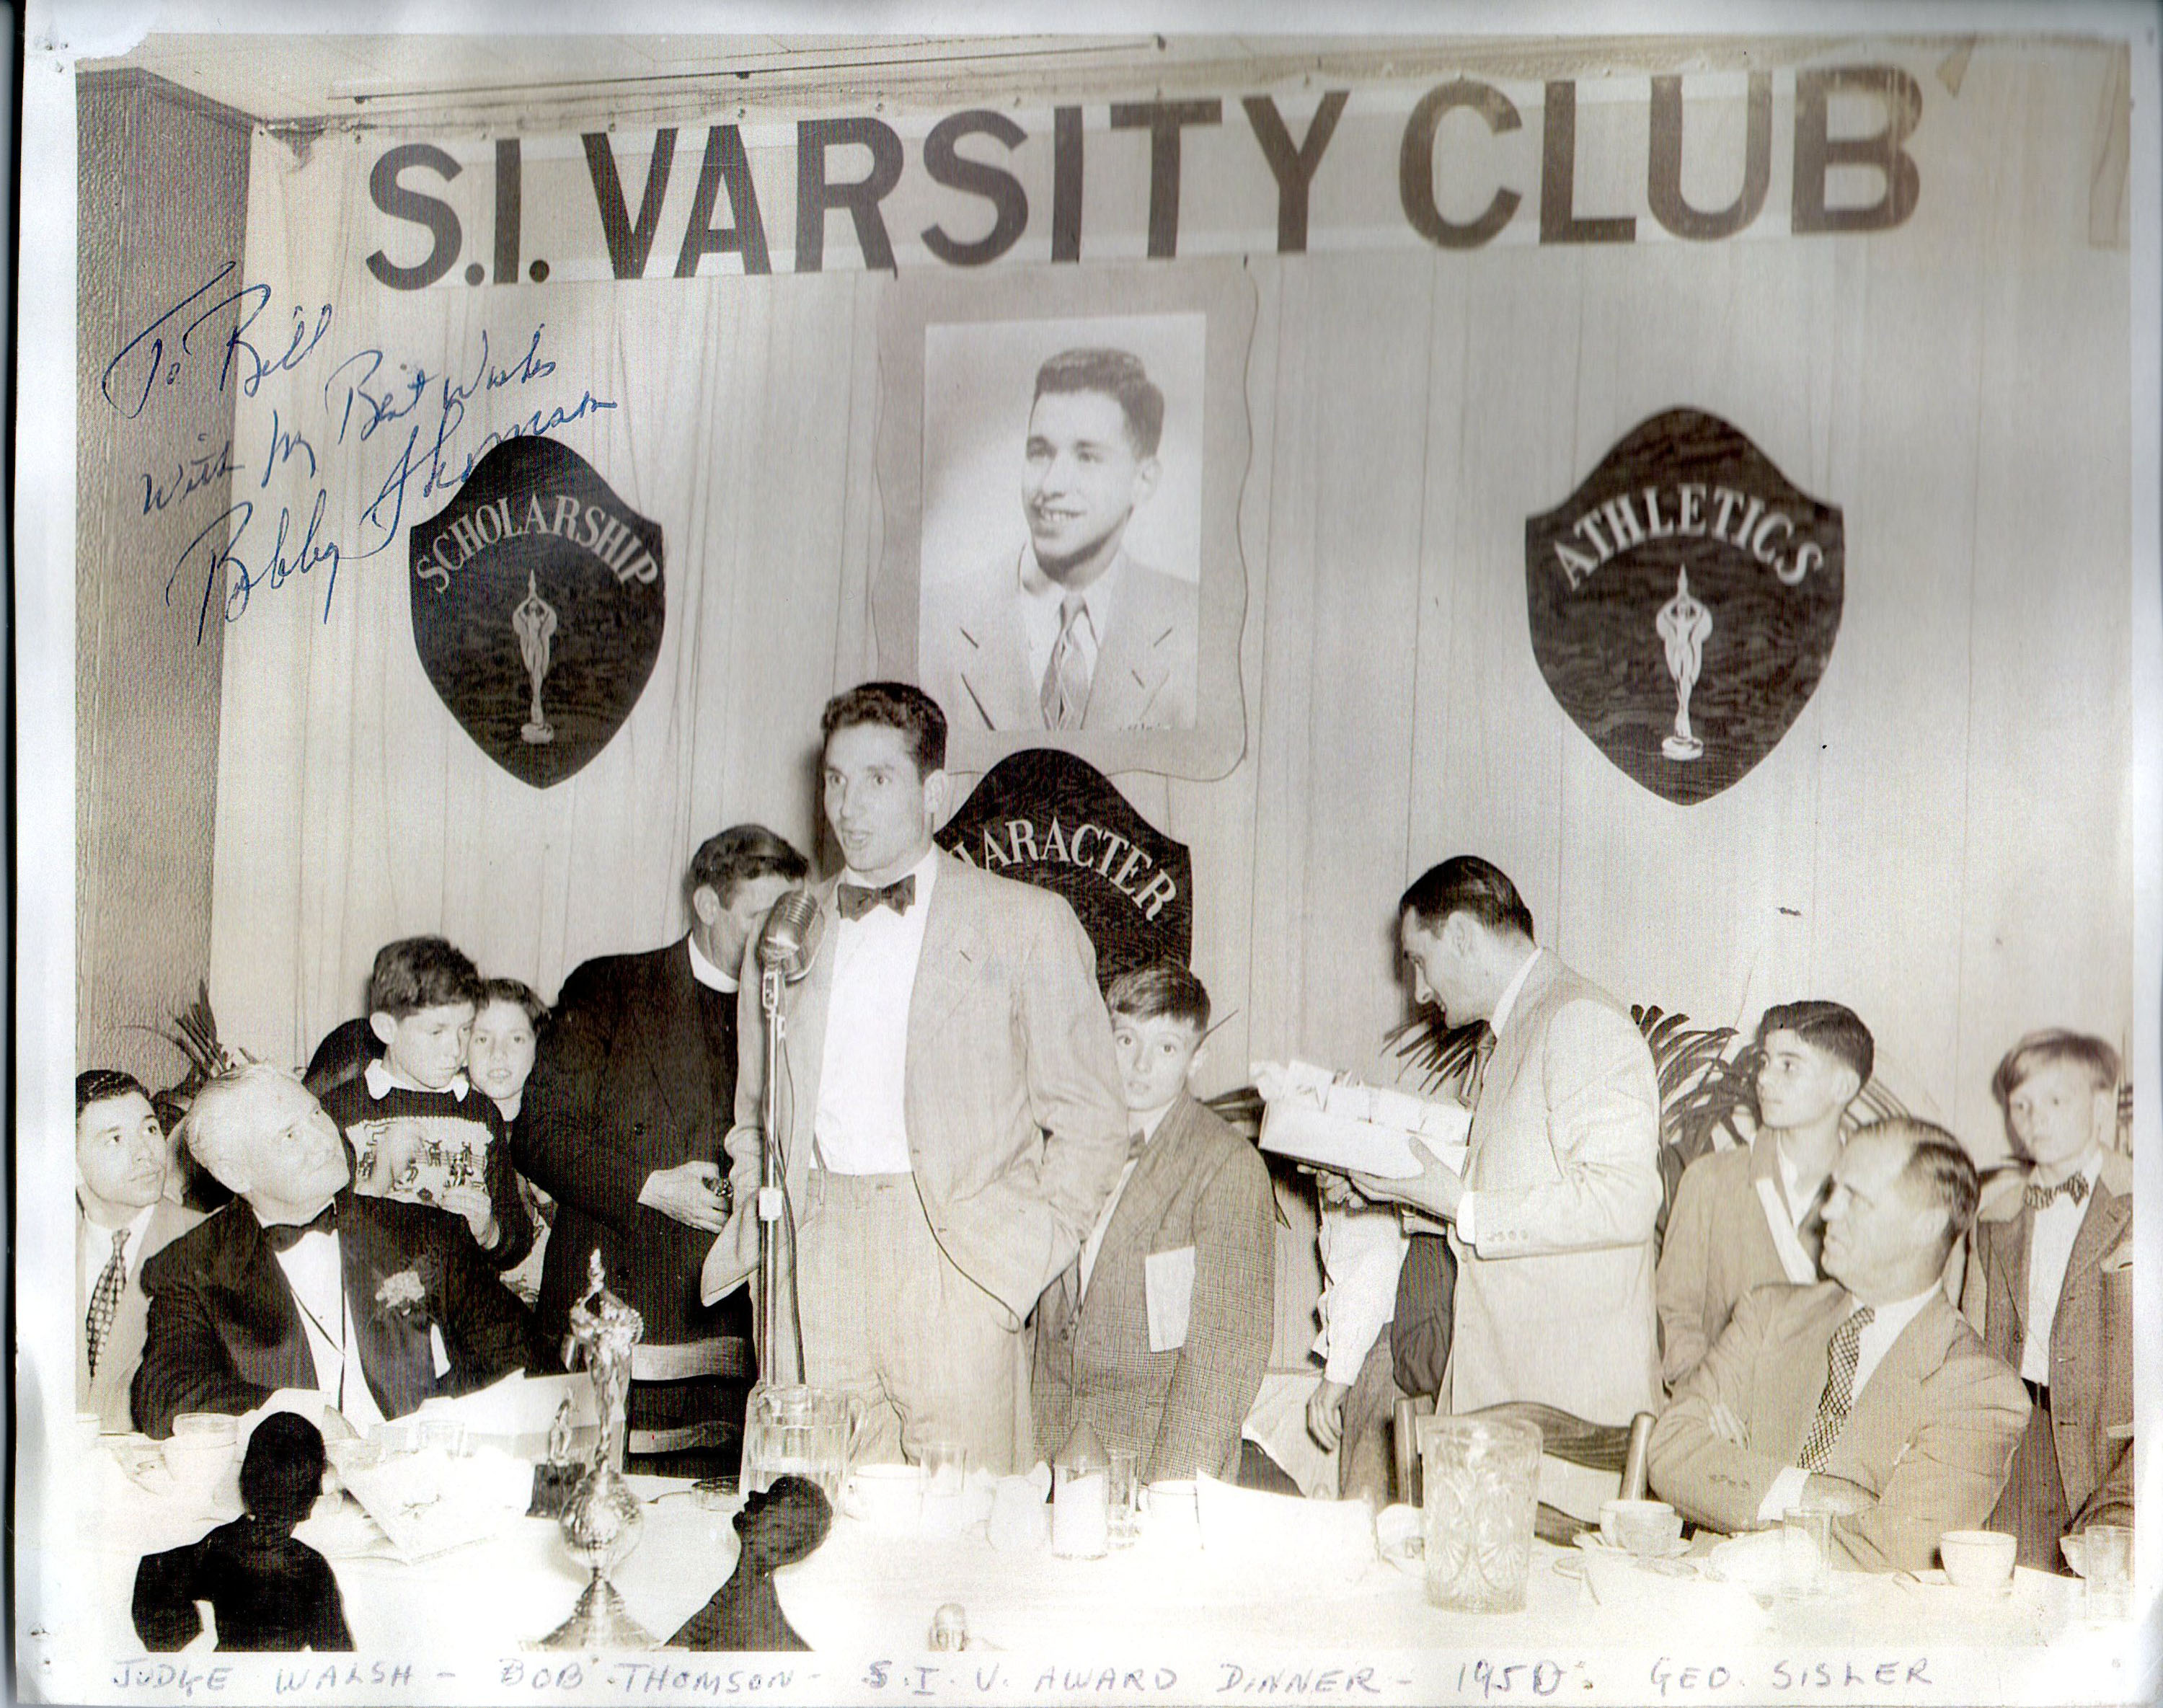 Bobby Thompson speaking at the SI Varsity Awards Dinner in 1950